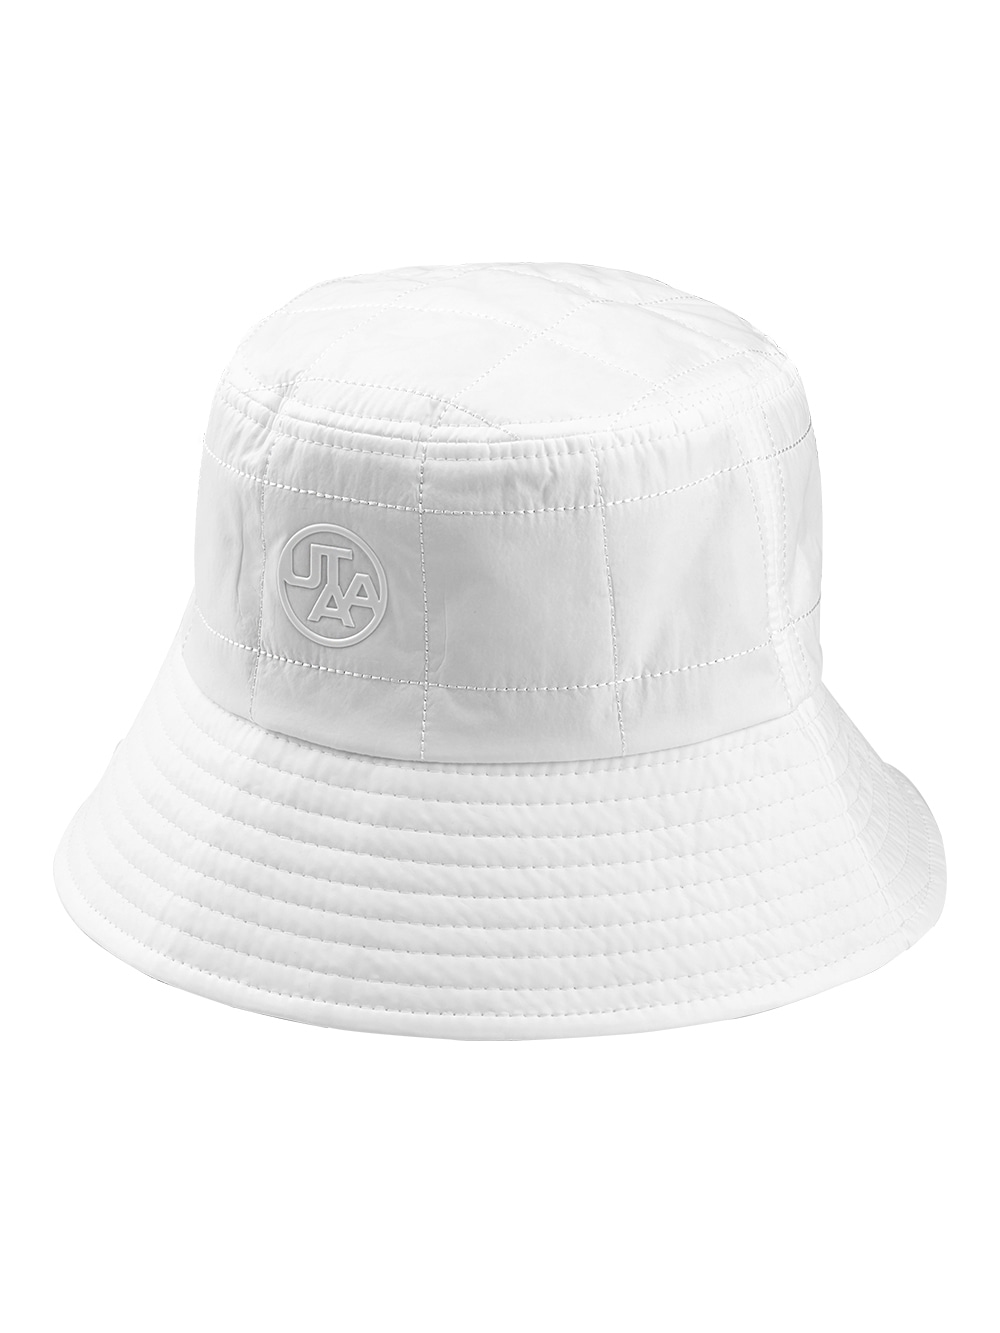 UTAA Square Quilting Bucket Hat : White (UA4GCF744WH)